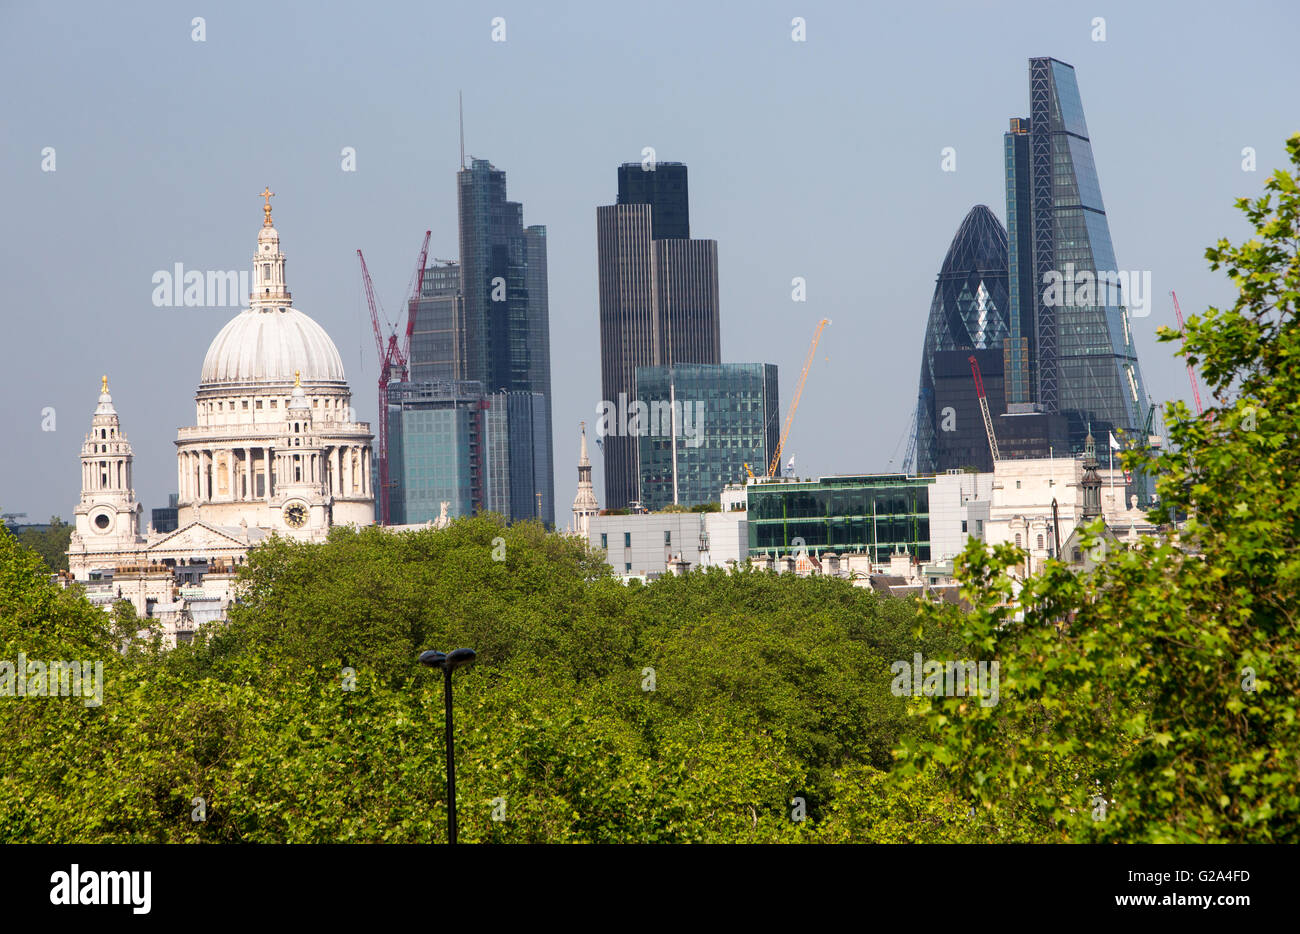 Blick auf St. Pauls Cathedral mit üppigem Grün im Vordergrund und der City of London, darunter The Gherkin und Tower 42 Stockfoto